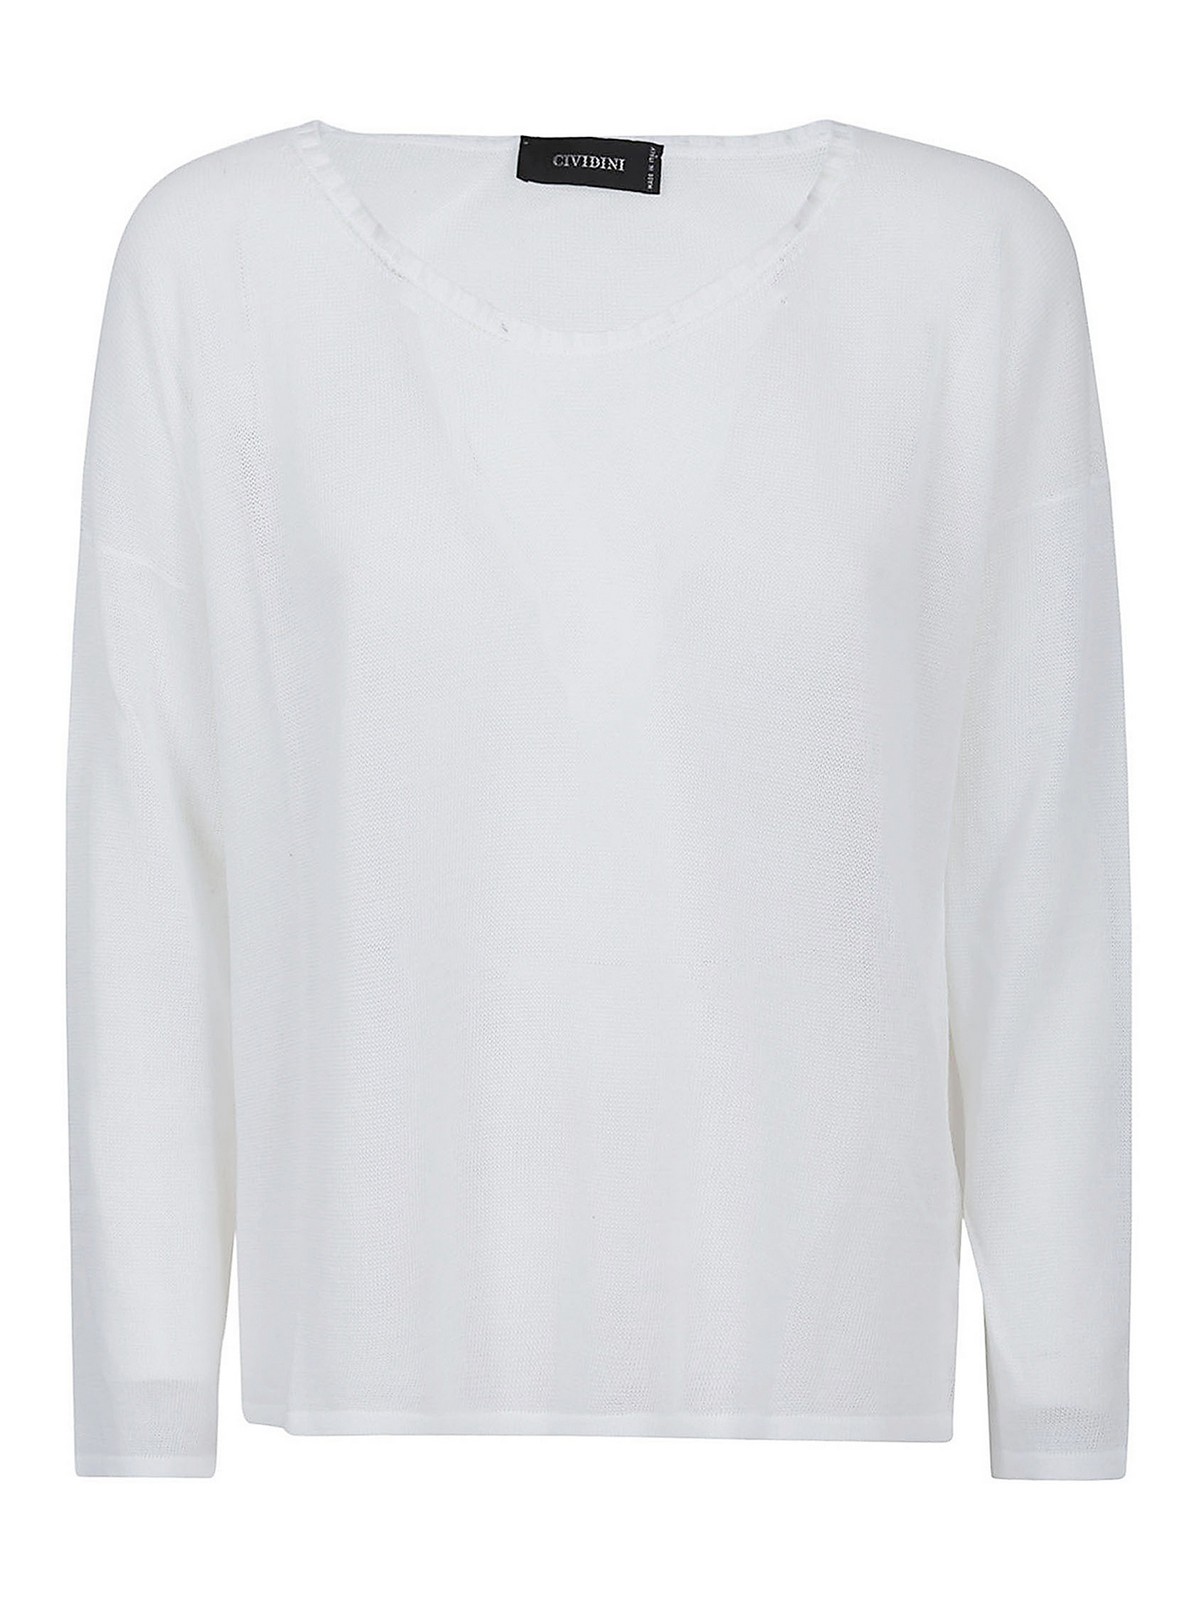 Cividini Sweater In White